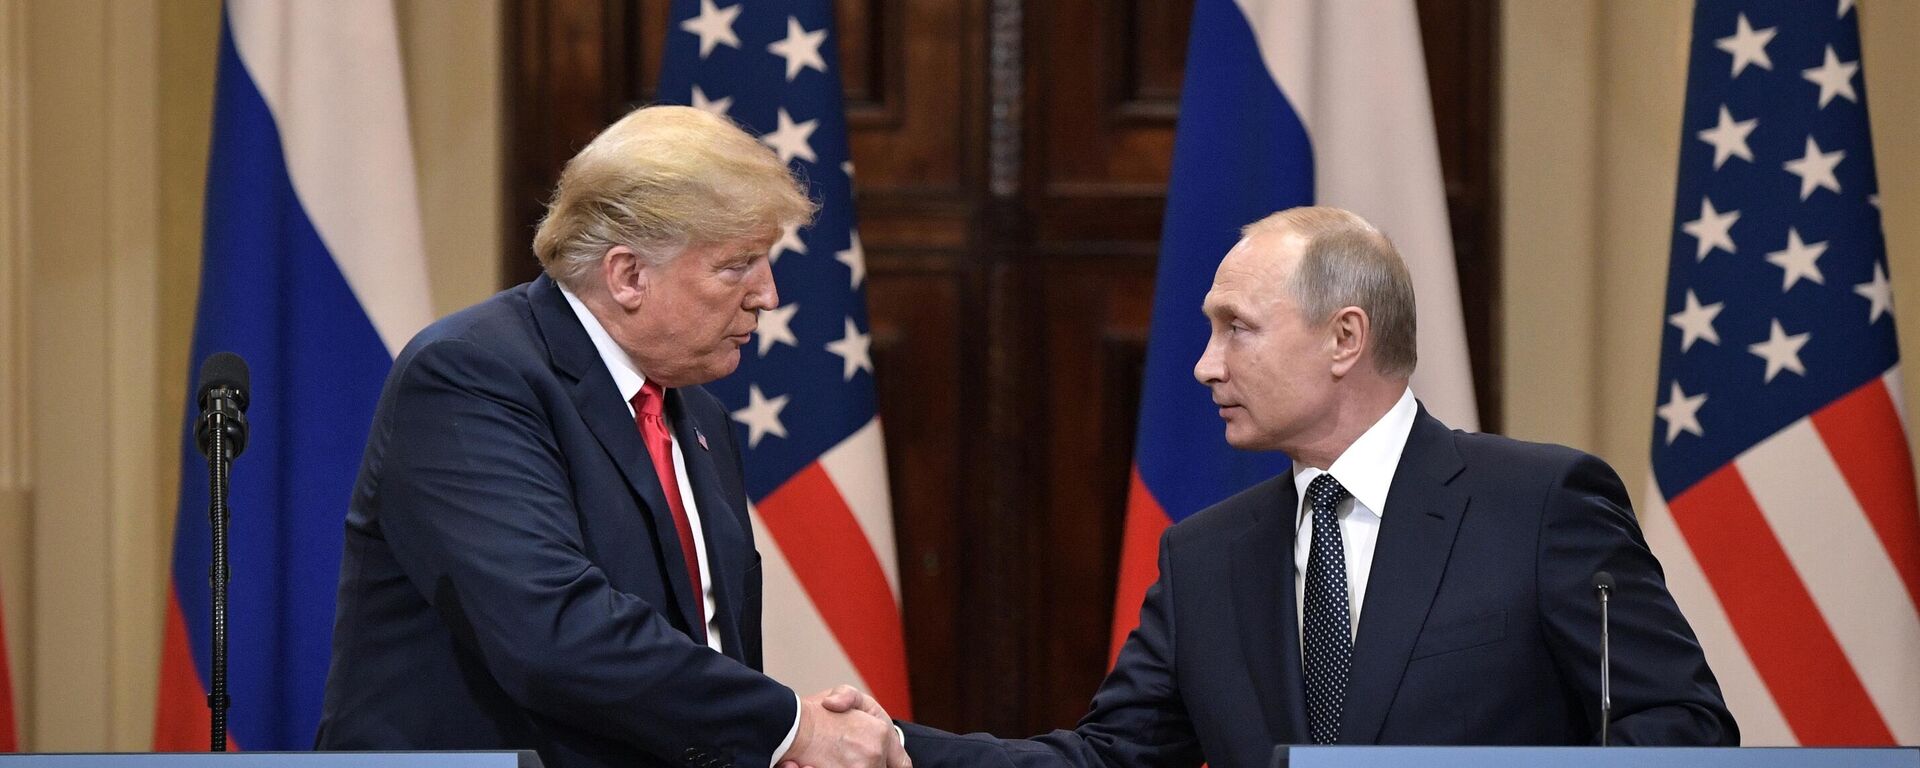 ロシアのプーチン大統領と米国のドナルド・トランプ大統領がヘルシンキで会談（2018年） - Sputnik 日本, 1920, 14.03.2023